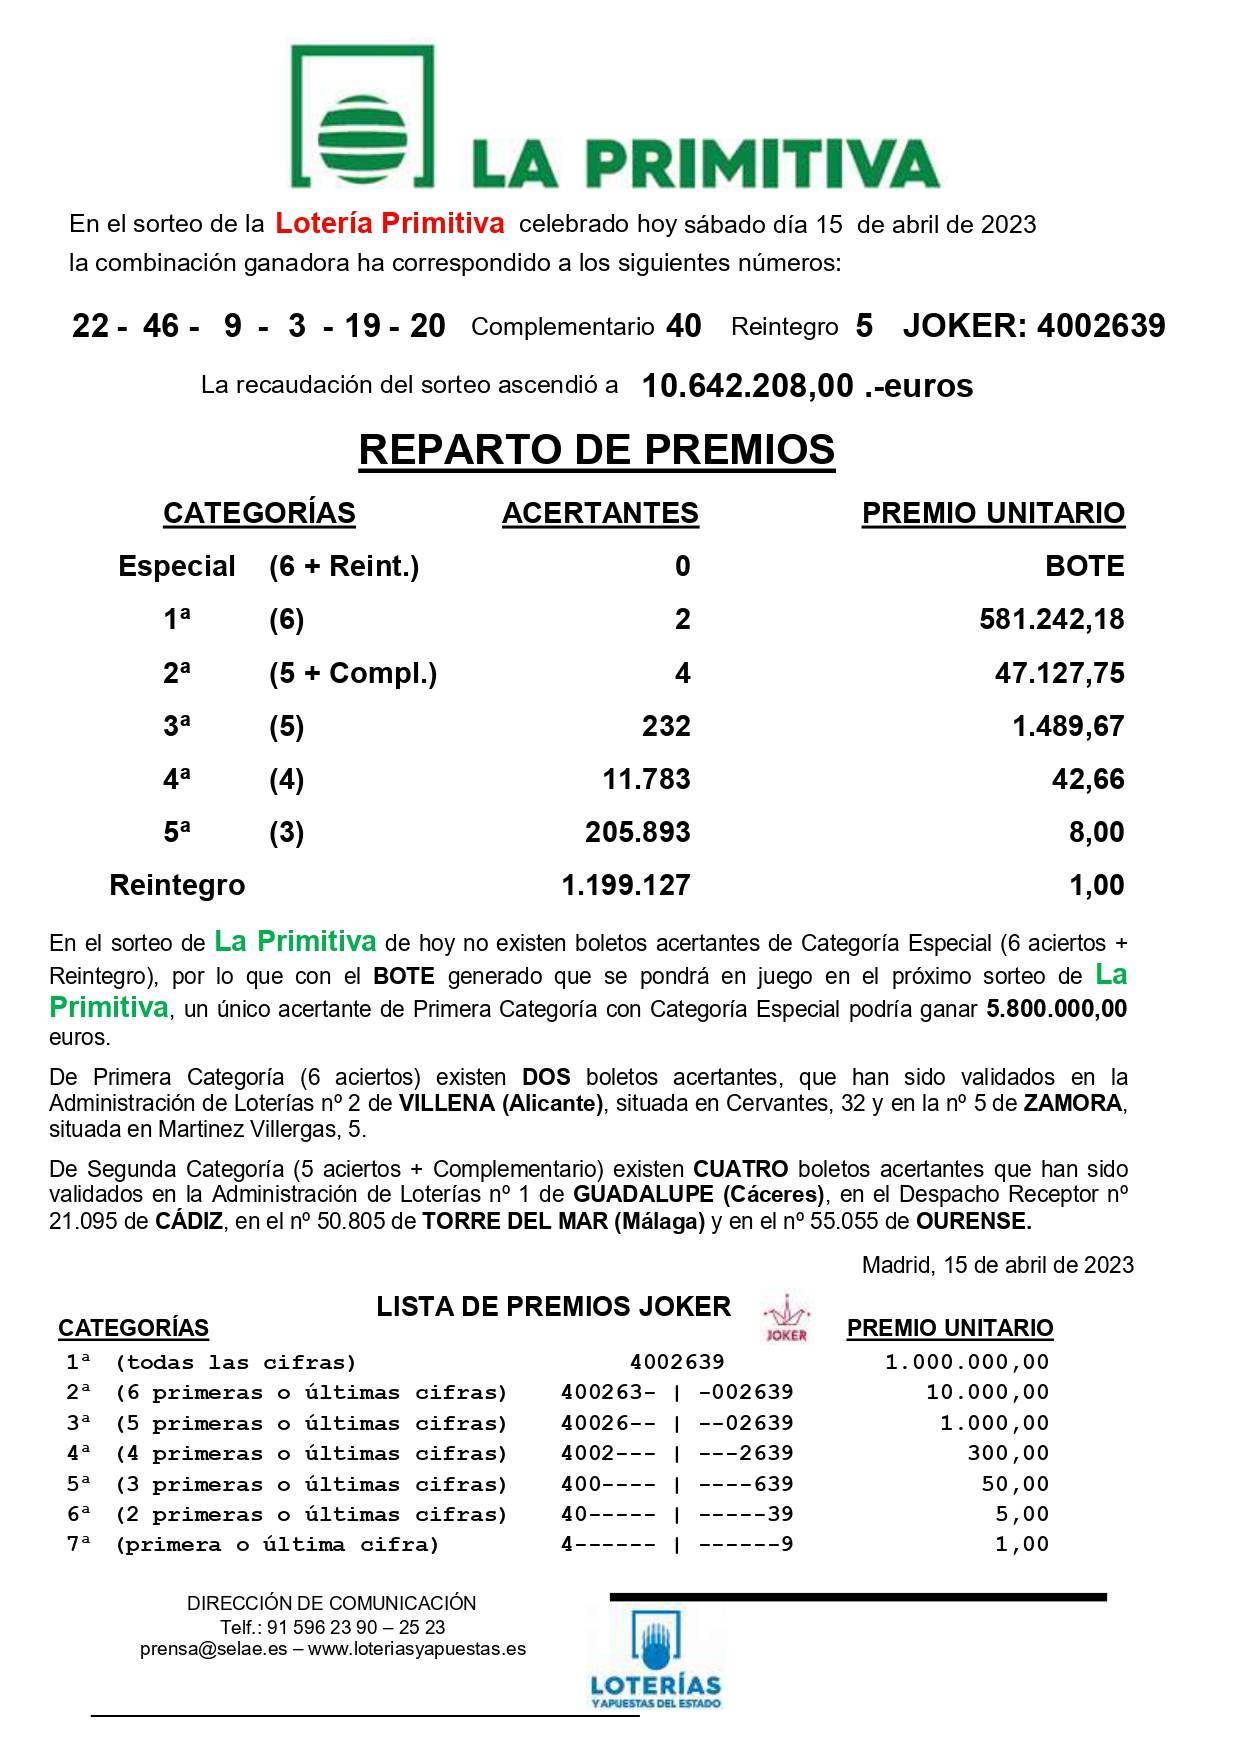 Un acertante de segunda categoría de la Primitiva gana 47.127,75 € (2023) - Guadalupe (Cáceres) 2